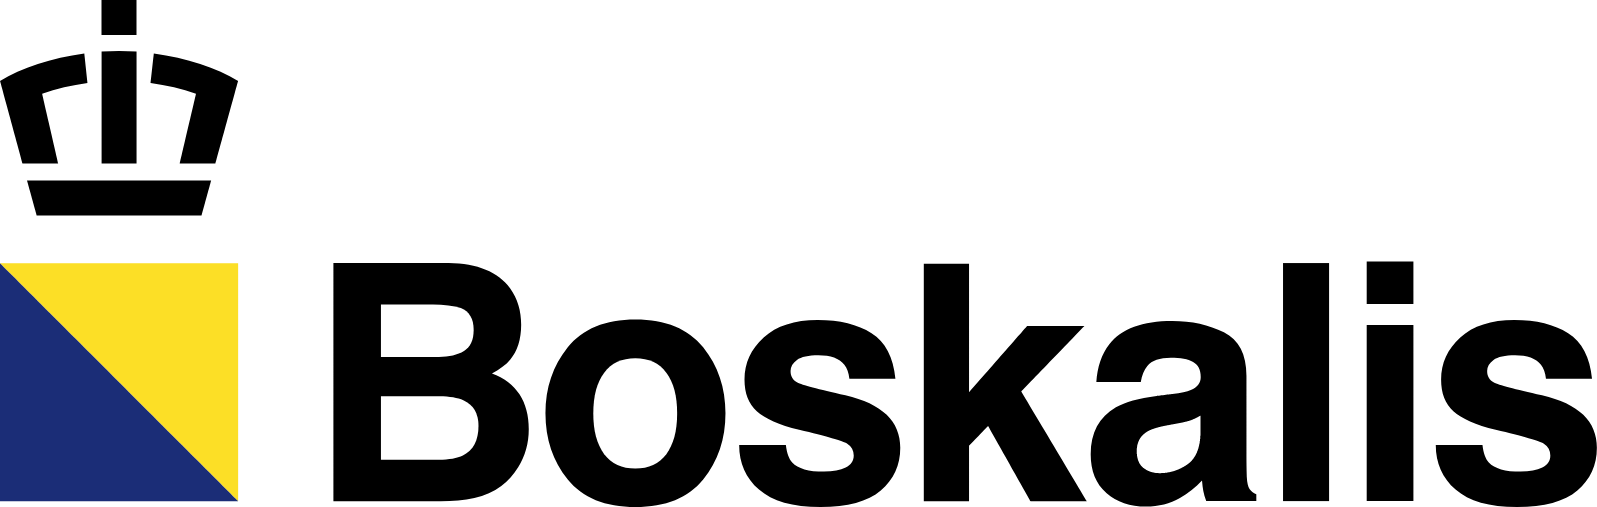 Royal Boskalis Westminster logo large (transparent PNG)